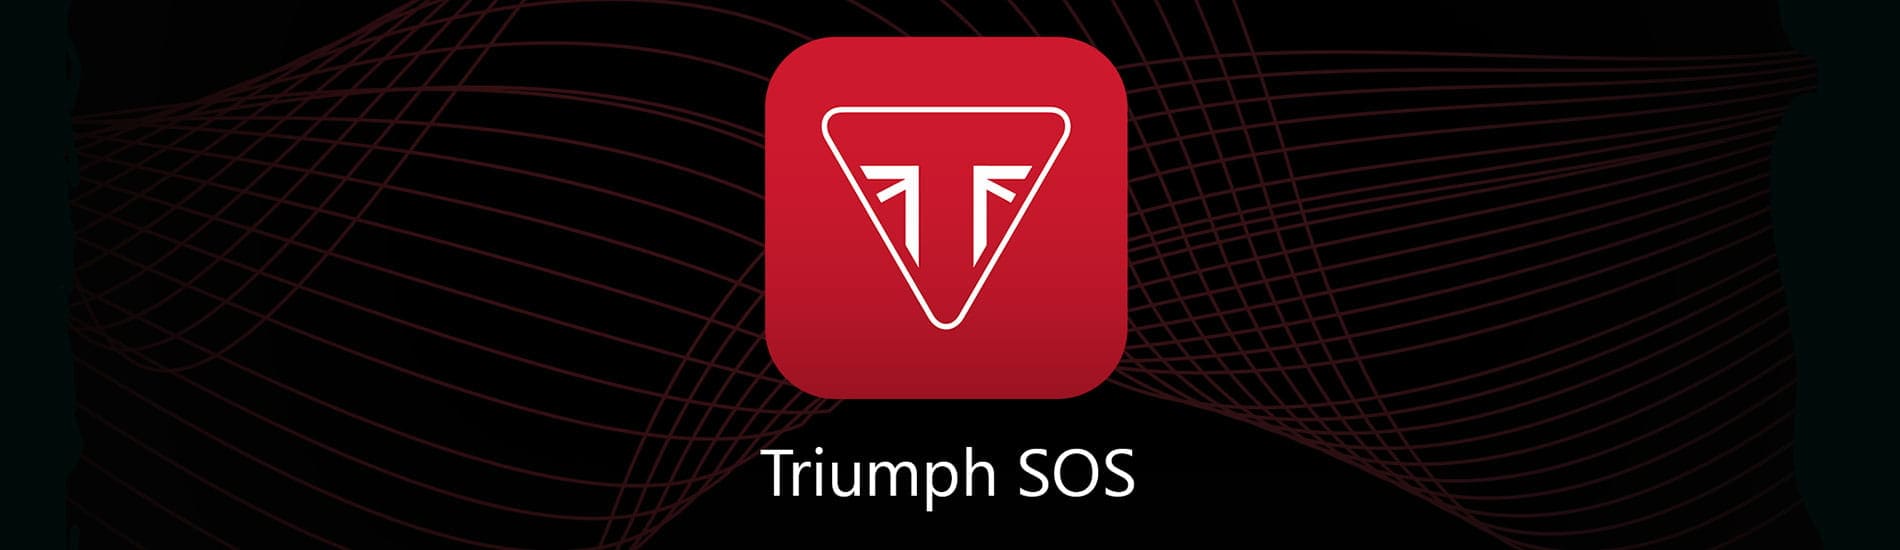 Triumph SOS App)